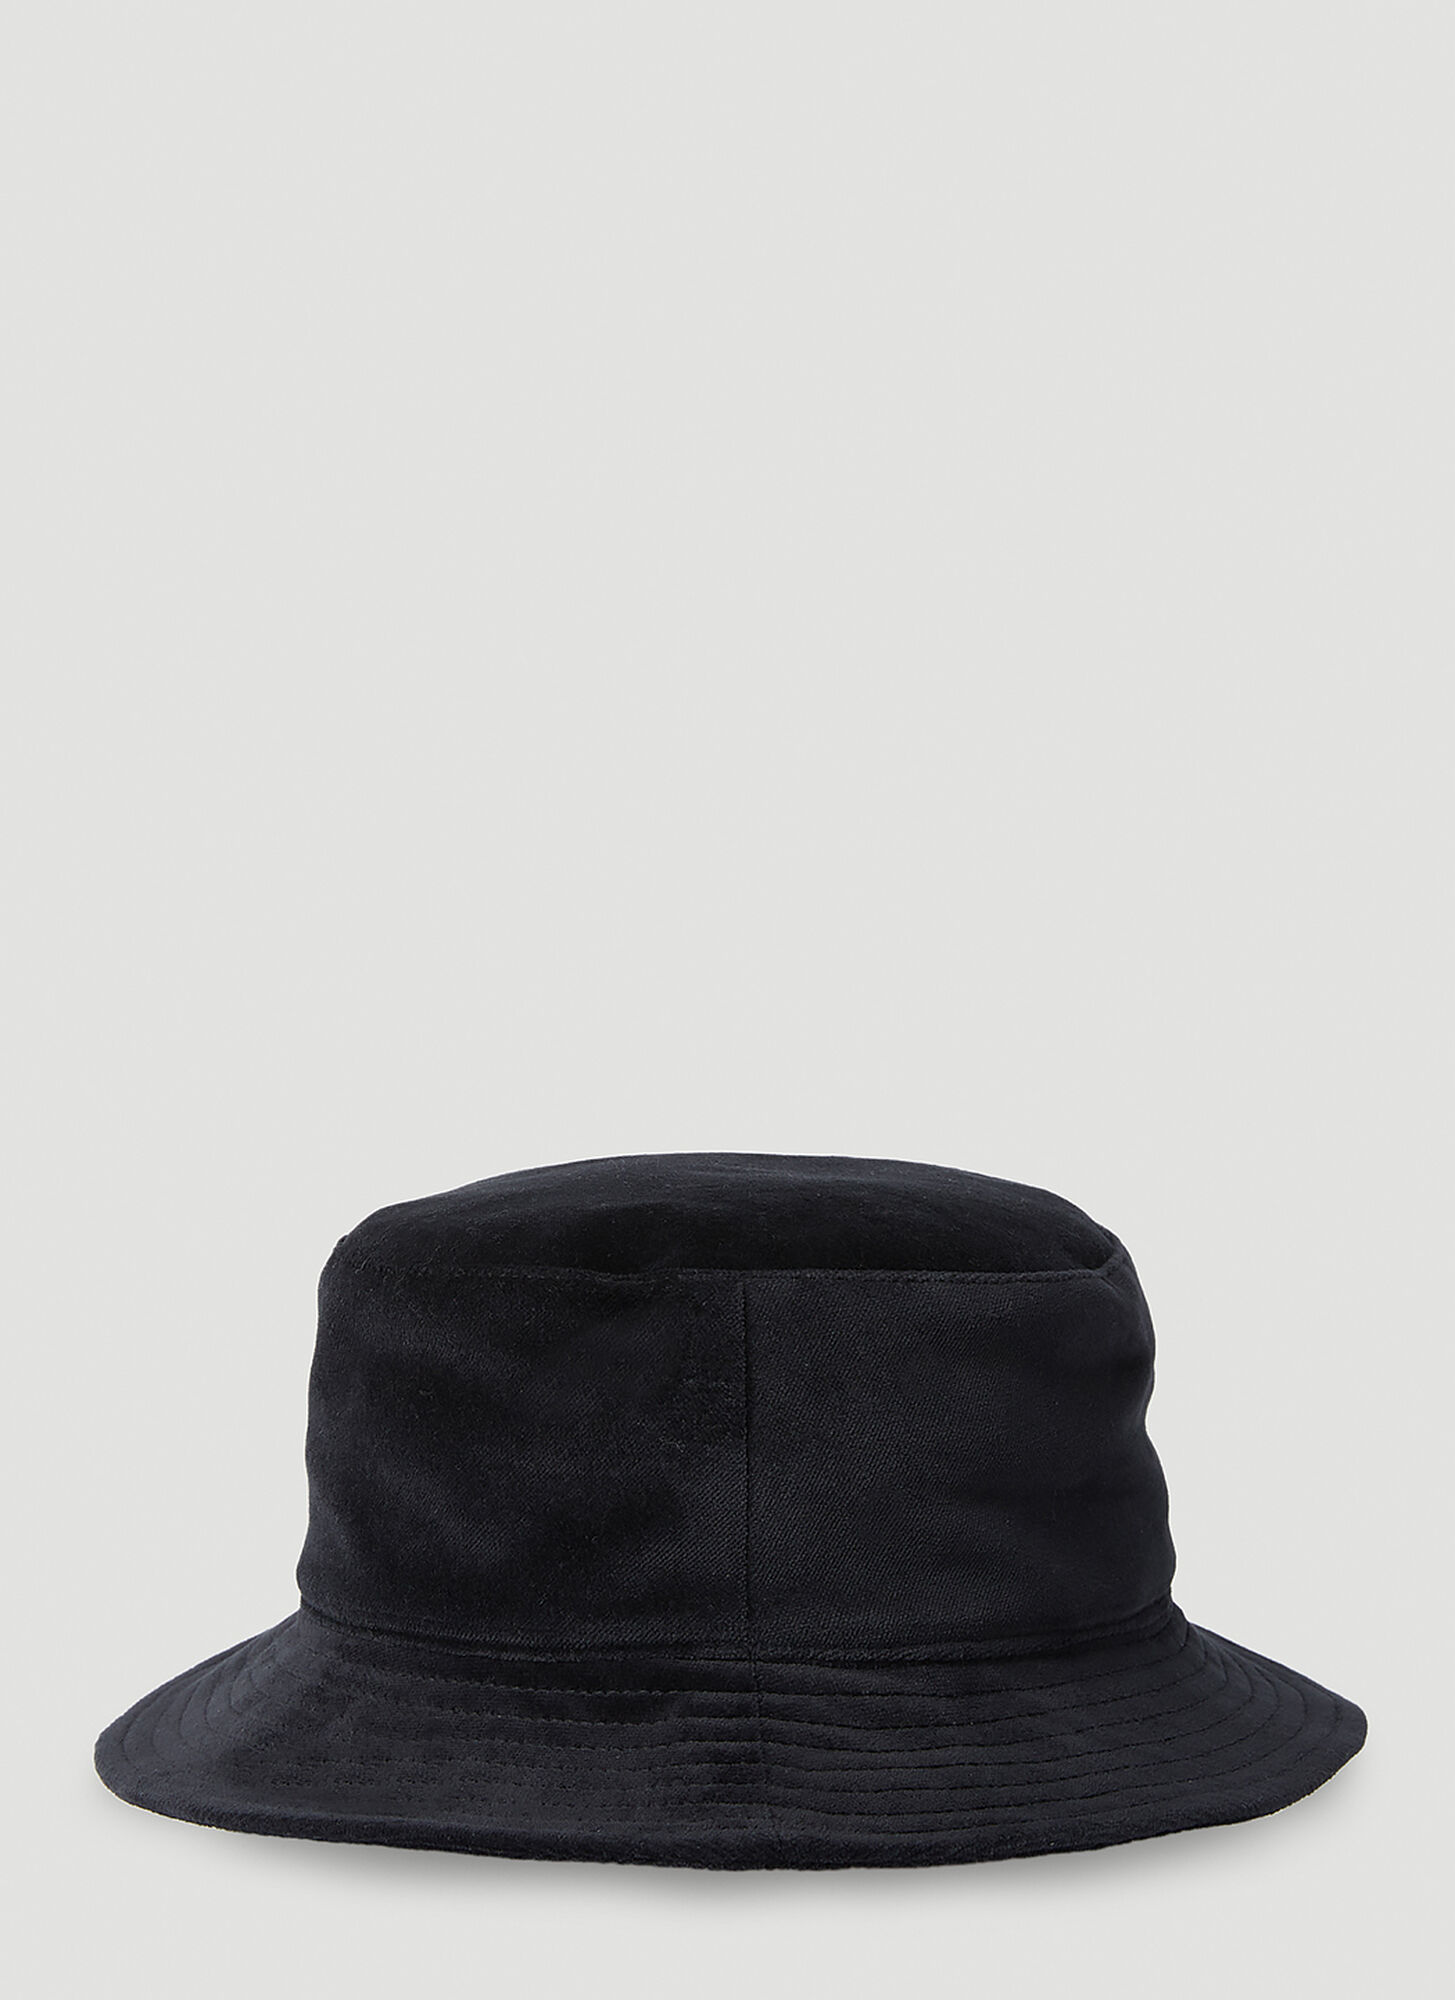 Gallery Dept. Rodman Bucket Hat In Black